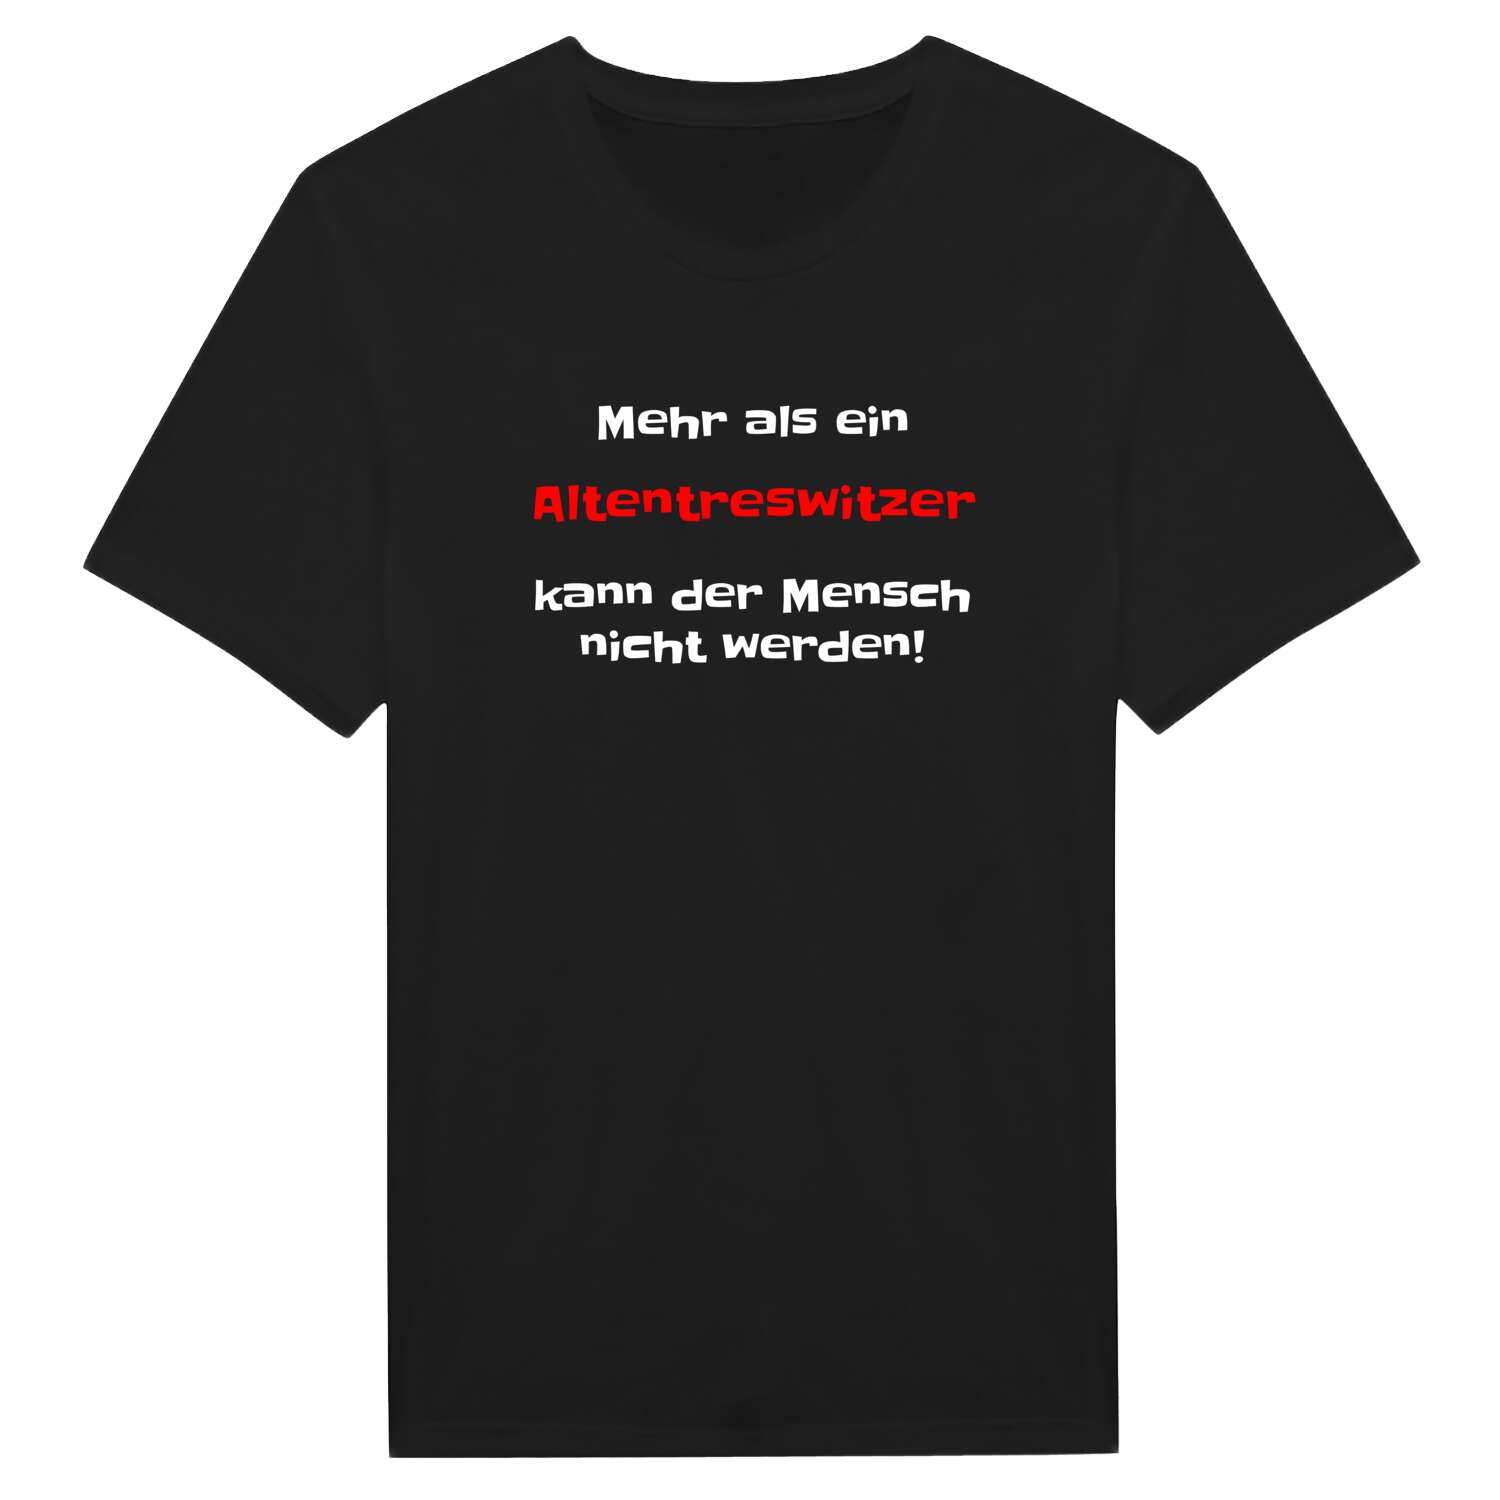 Altentreswitz T-Shirt »Mehr als ein«